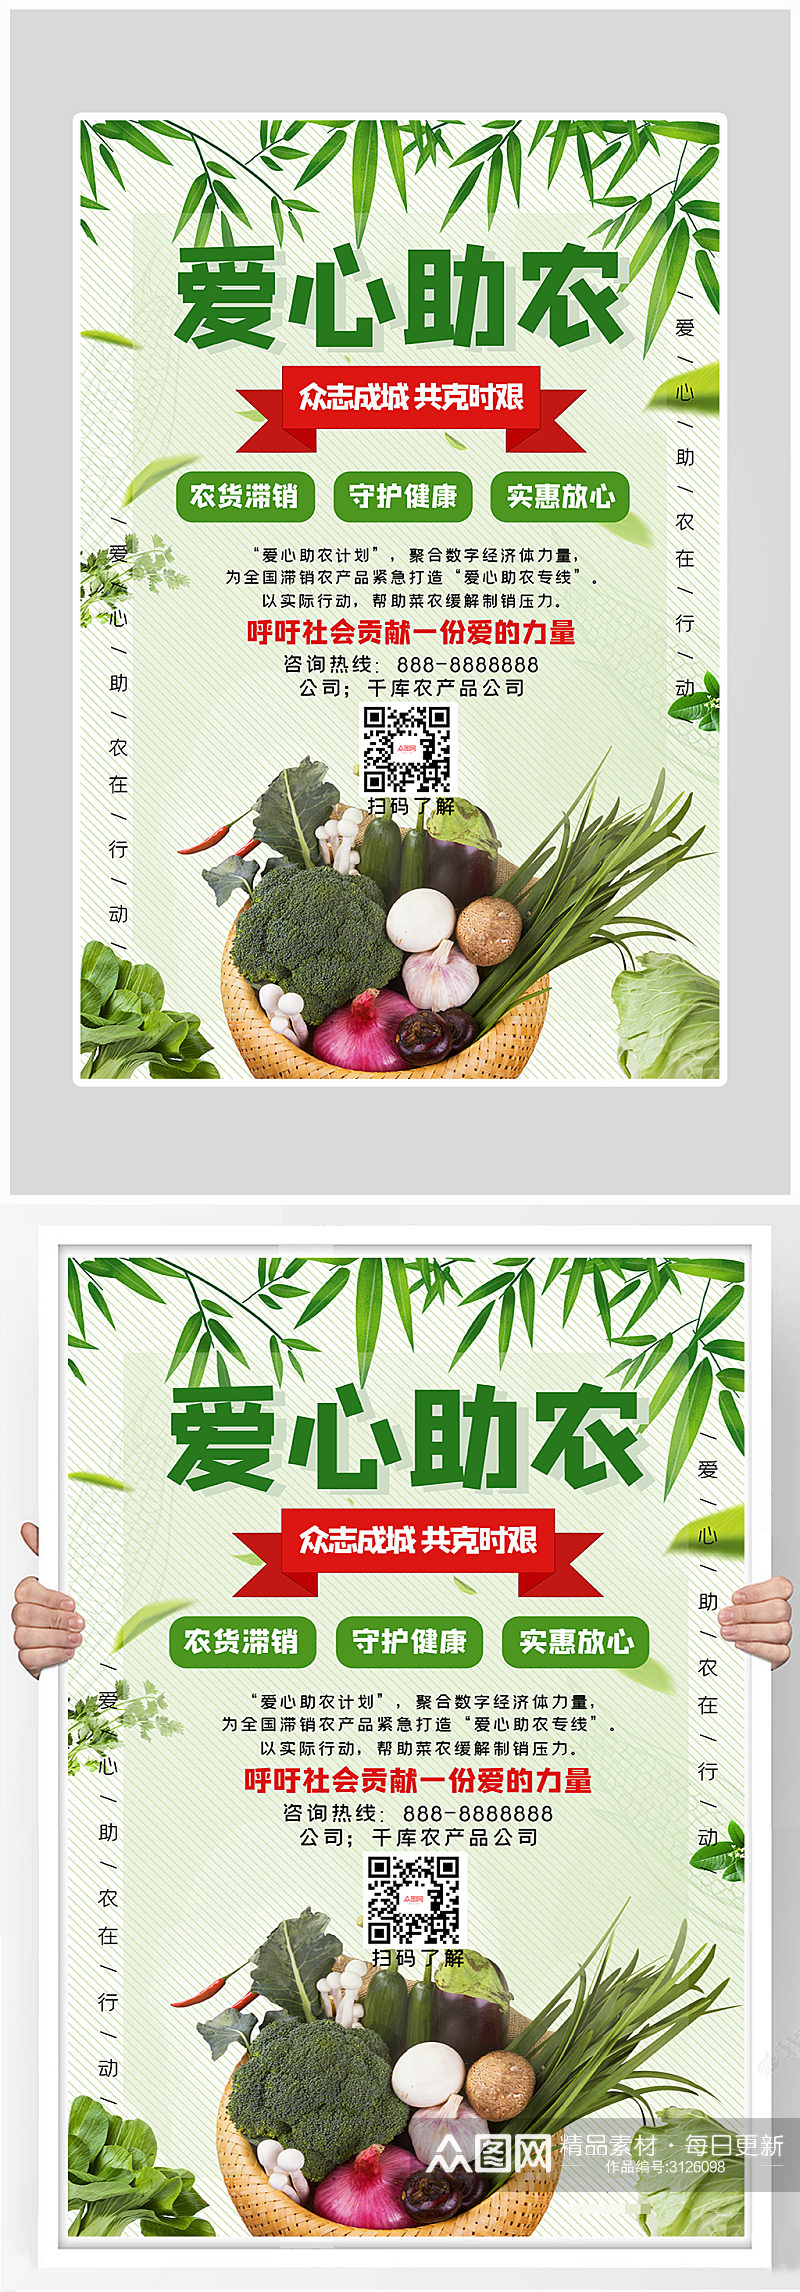 创意简约绿色农产品海报设计素材